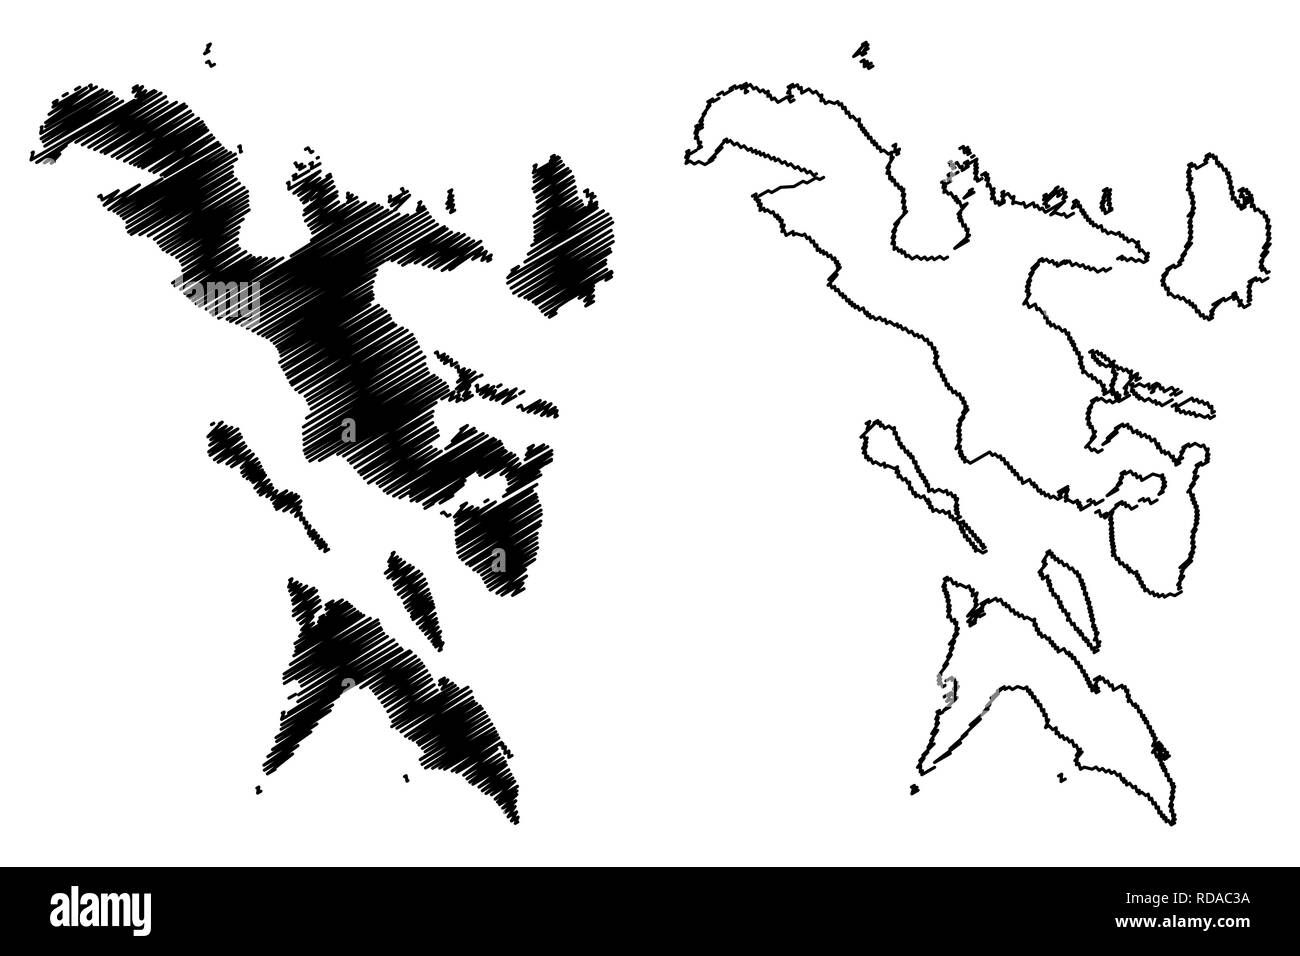 Bicol Region (Regionen und Provinzen der Philippinen, die Republik der Philippinen) Karte Vektor-illustration, kritzeln Skizze Ibalong (Region V) Karte anzeigen Stock Vektor